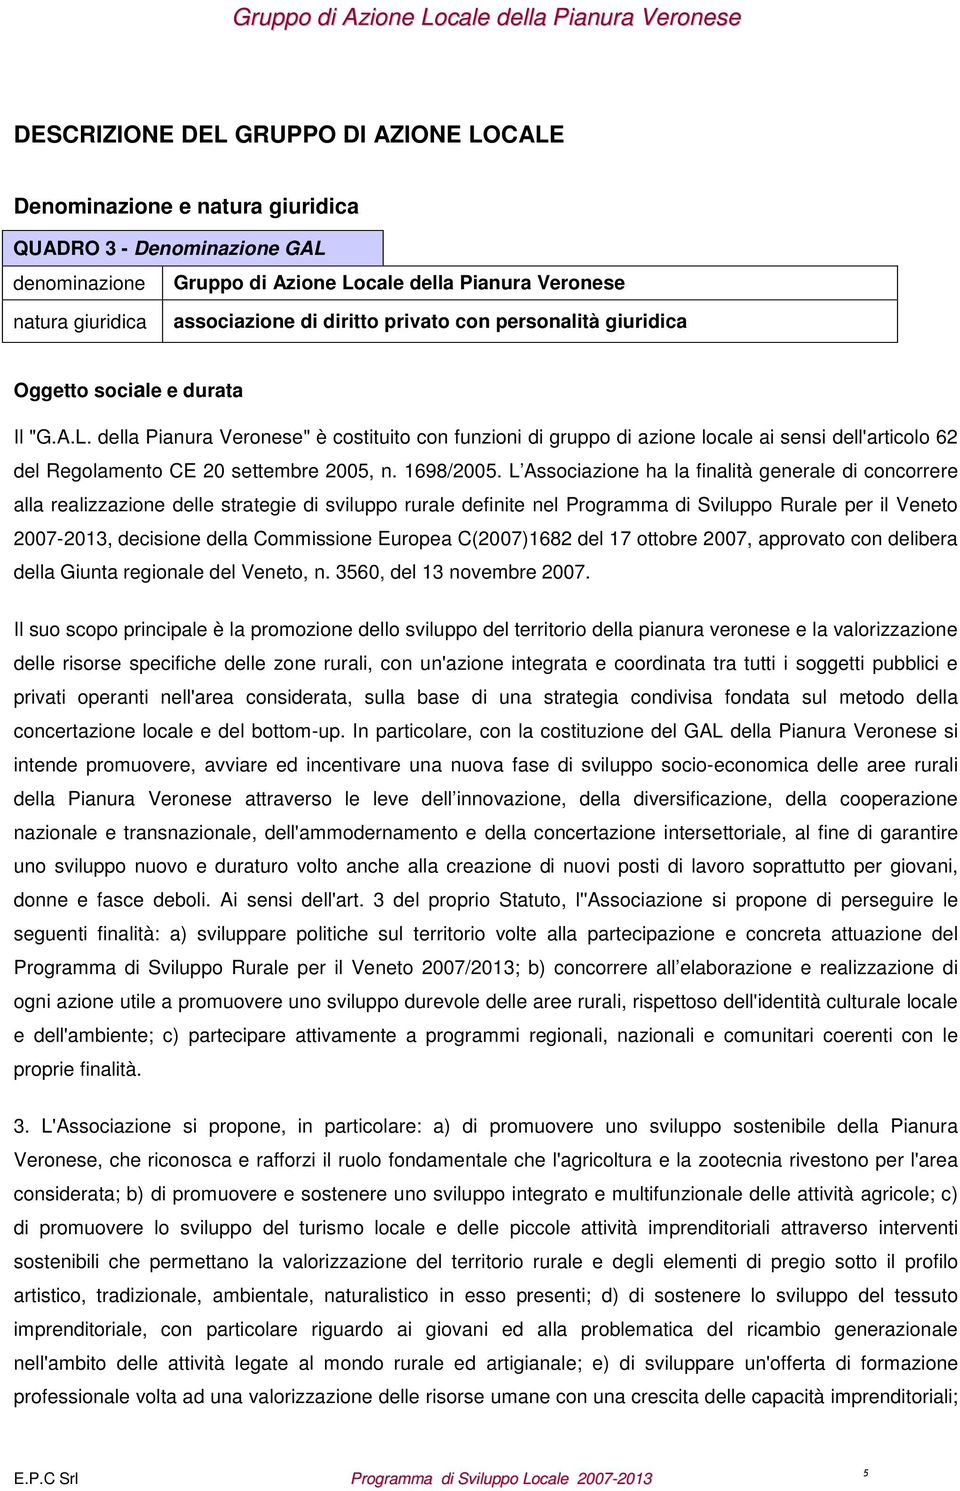 della Pianura Veronese" è costituito con funzioni di gruppo di azione locale ai sensi dell'articolo 62 del Regolamento CE 20 settembre 2005, n. 1698/2005.